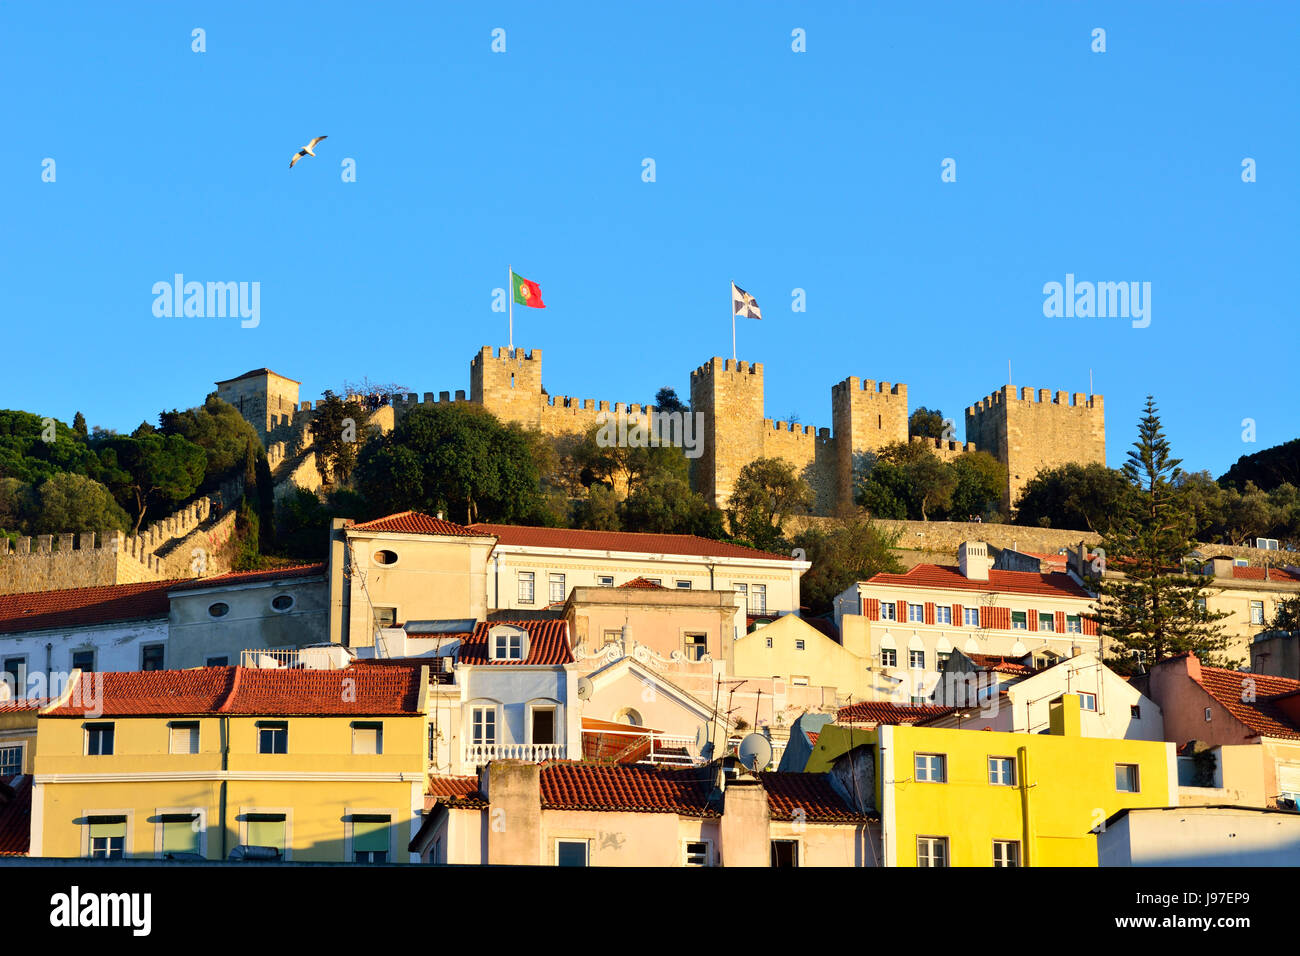 El castillo de Sao Jorge y el centro histórico. Lisboa, Portugal Foto de stock